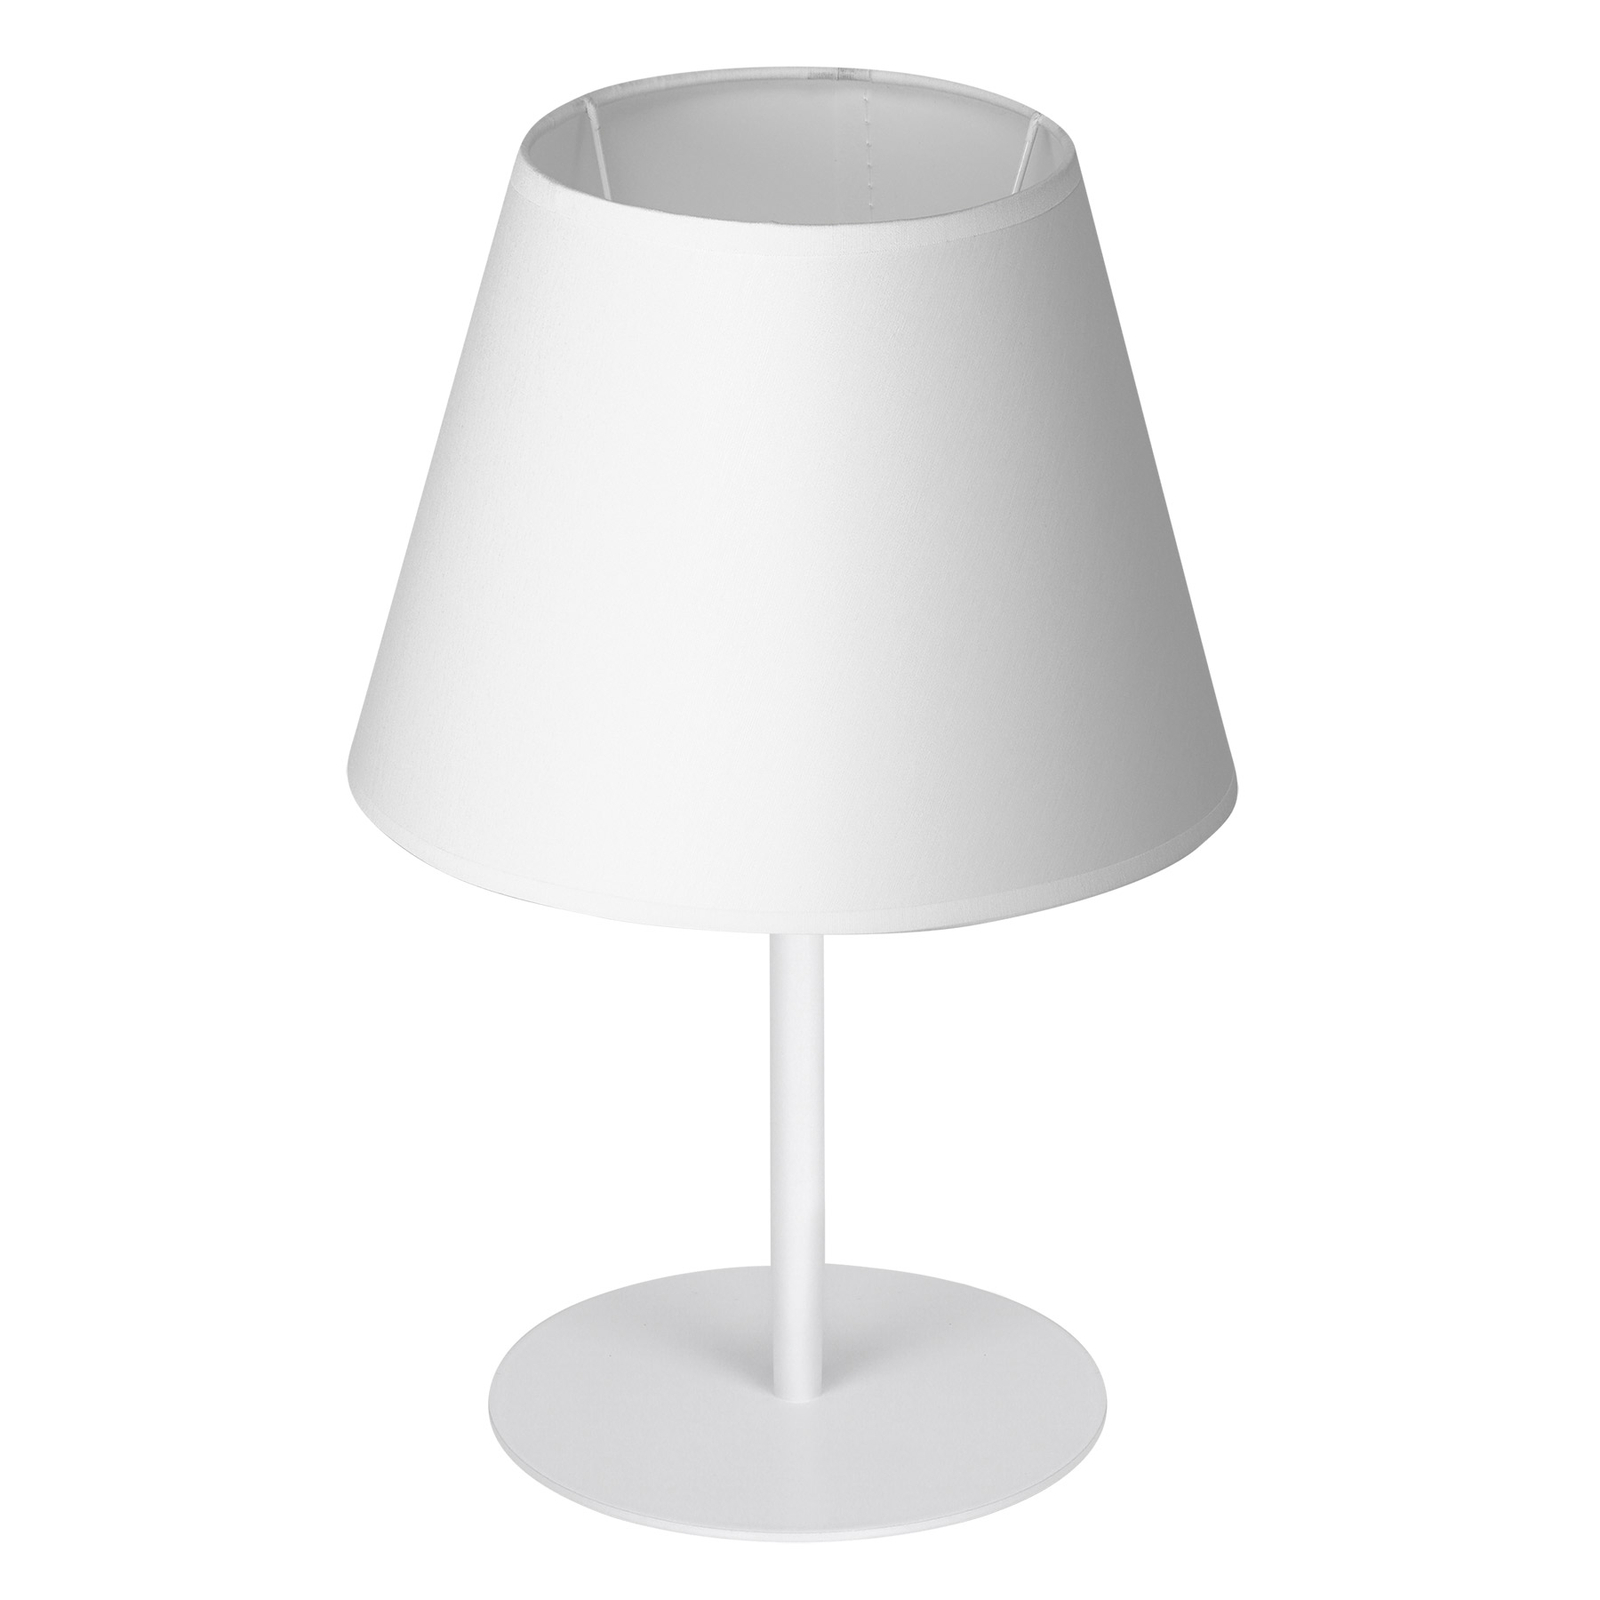 Lampa stołowa Soho, stożkowa 33 cm, biała